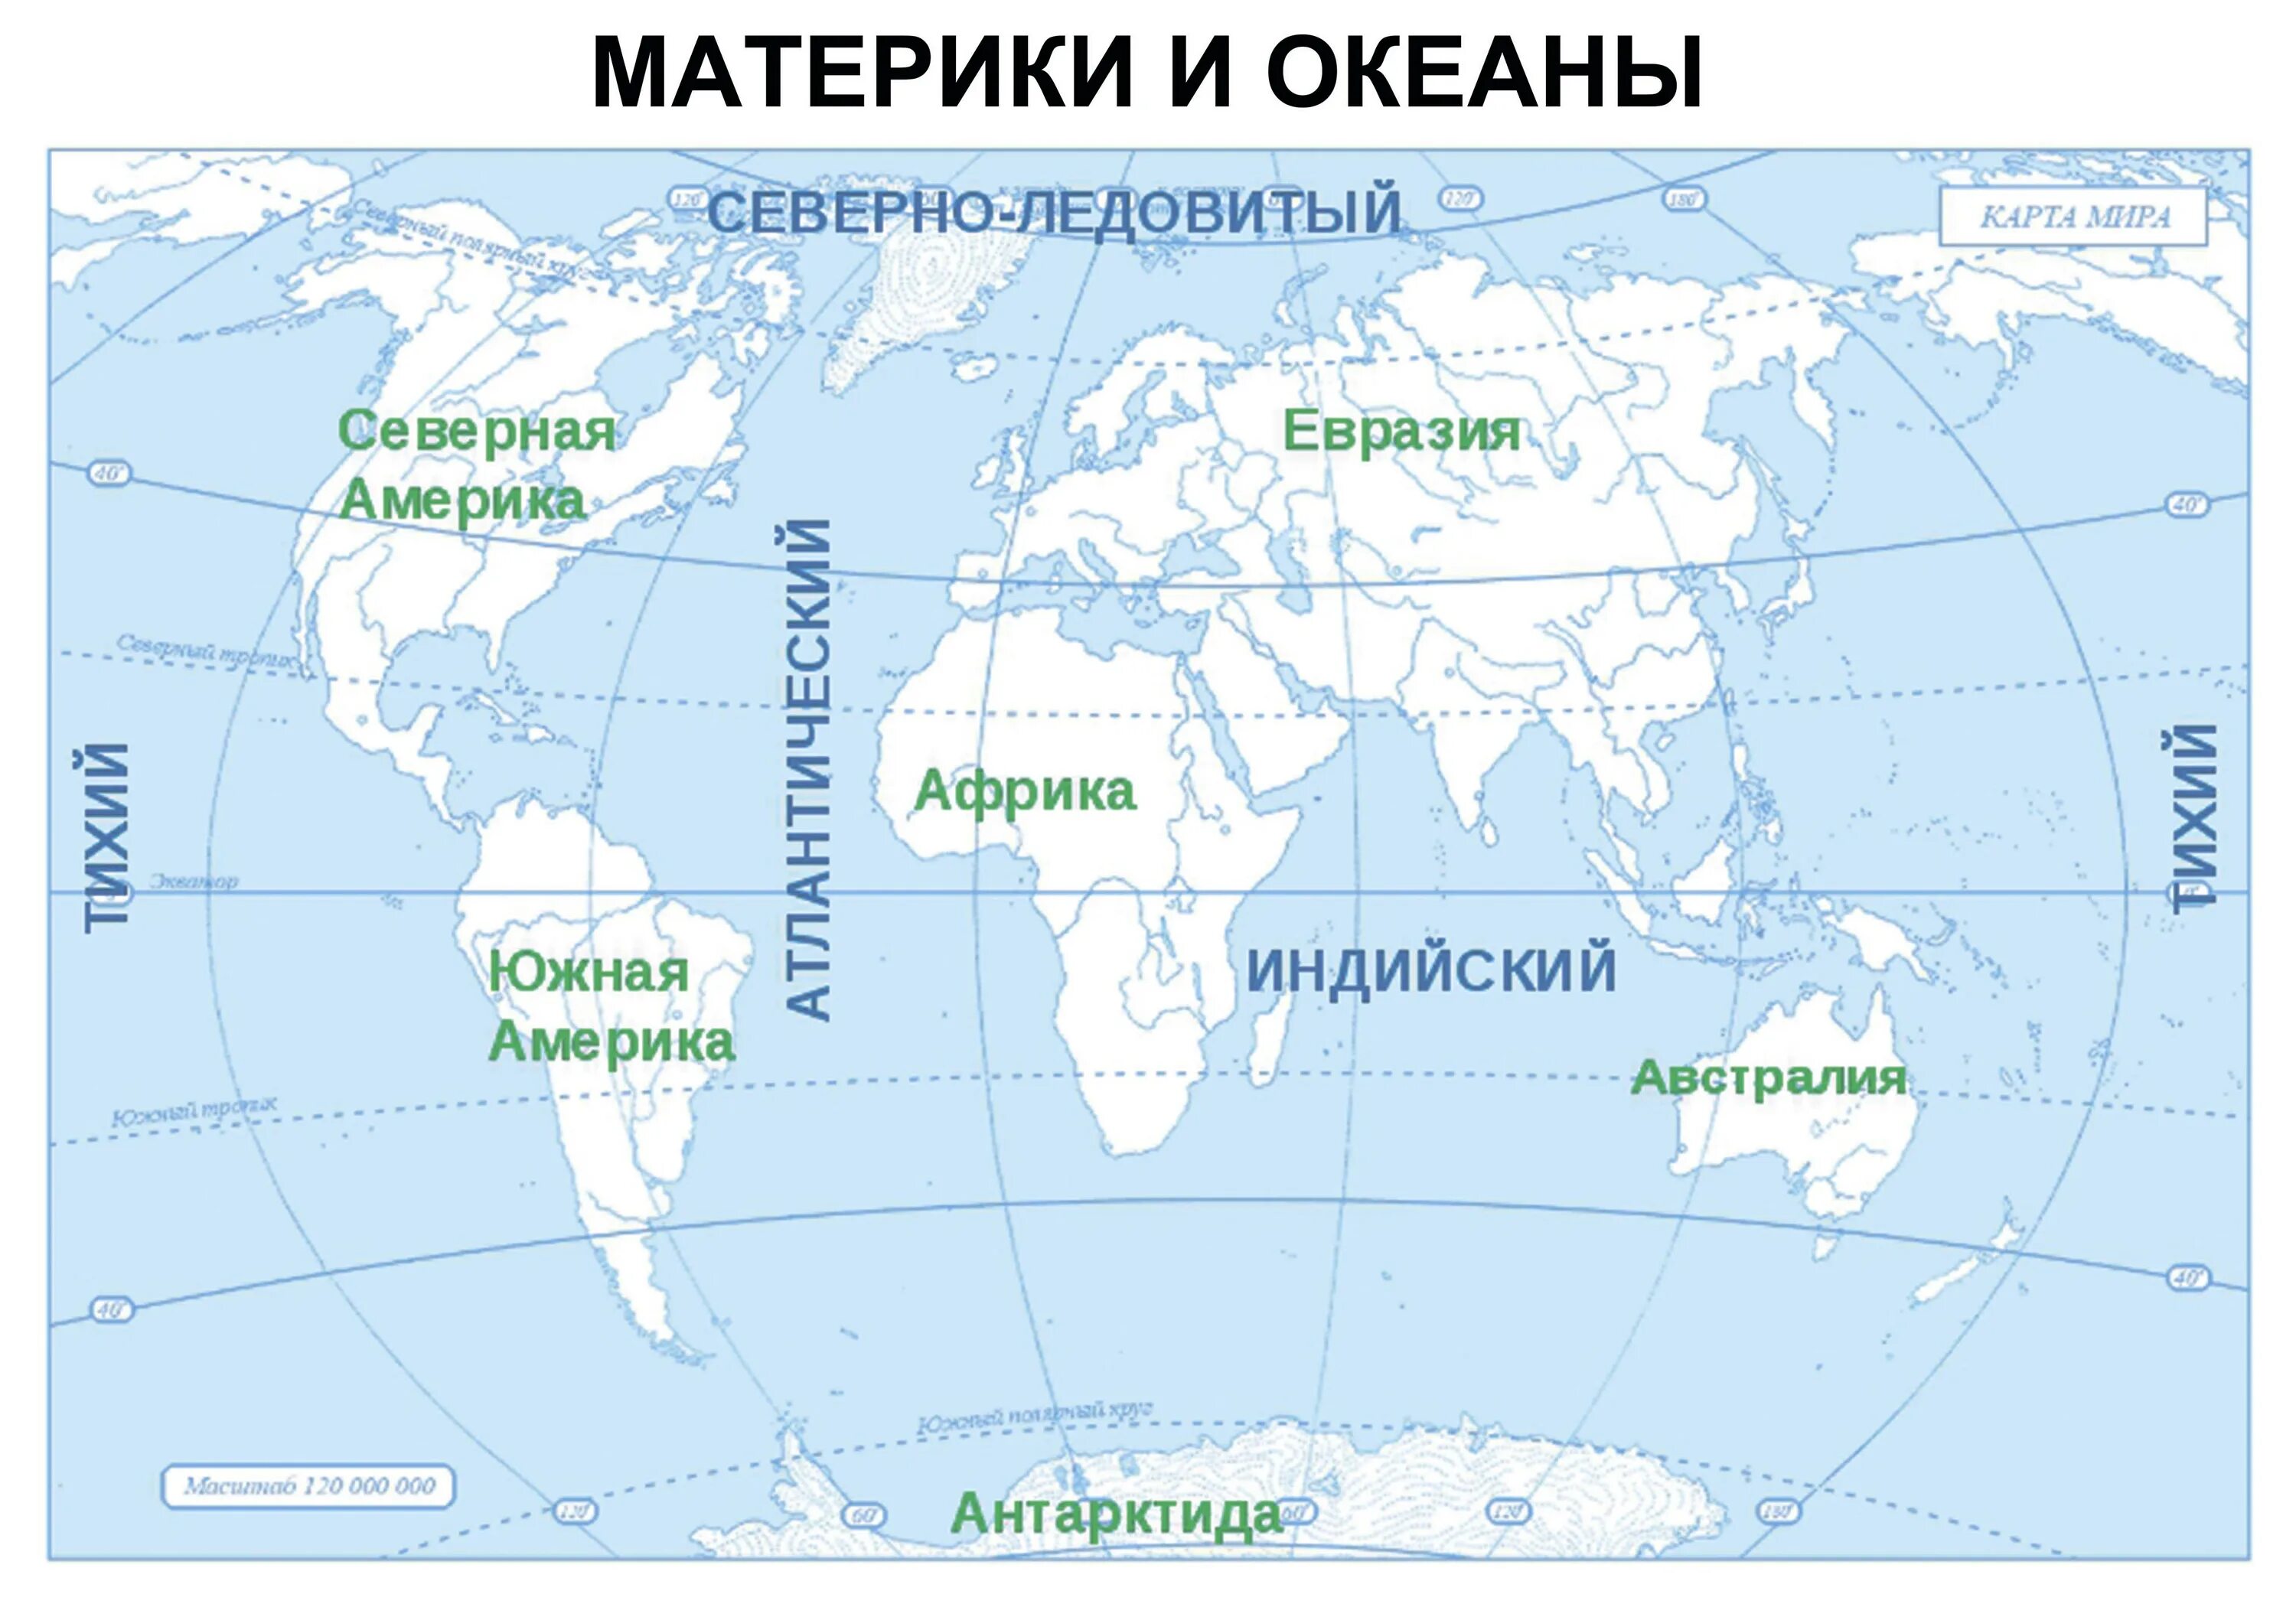 Карта где подписаны материки и океаны. Подписать материки и океаны на контурной карте. Подписать материки на контурной карте 6 класс география.